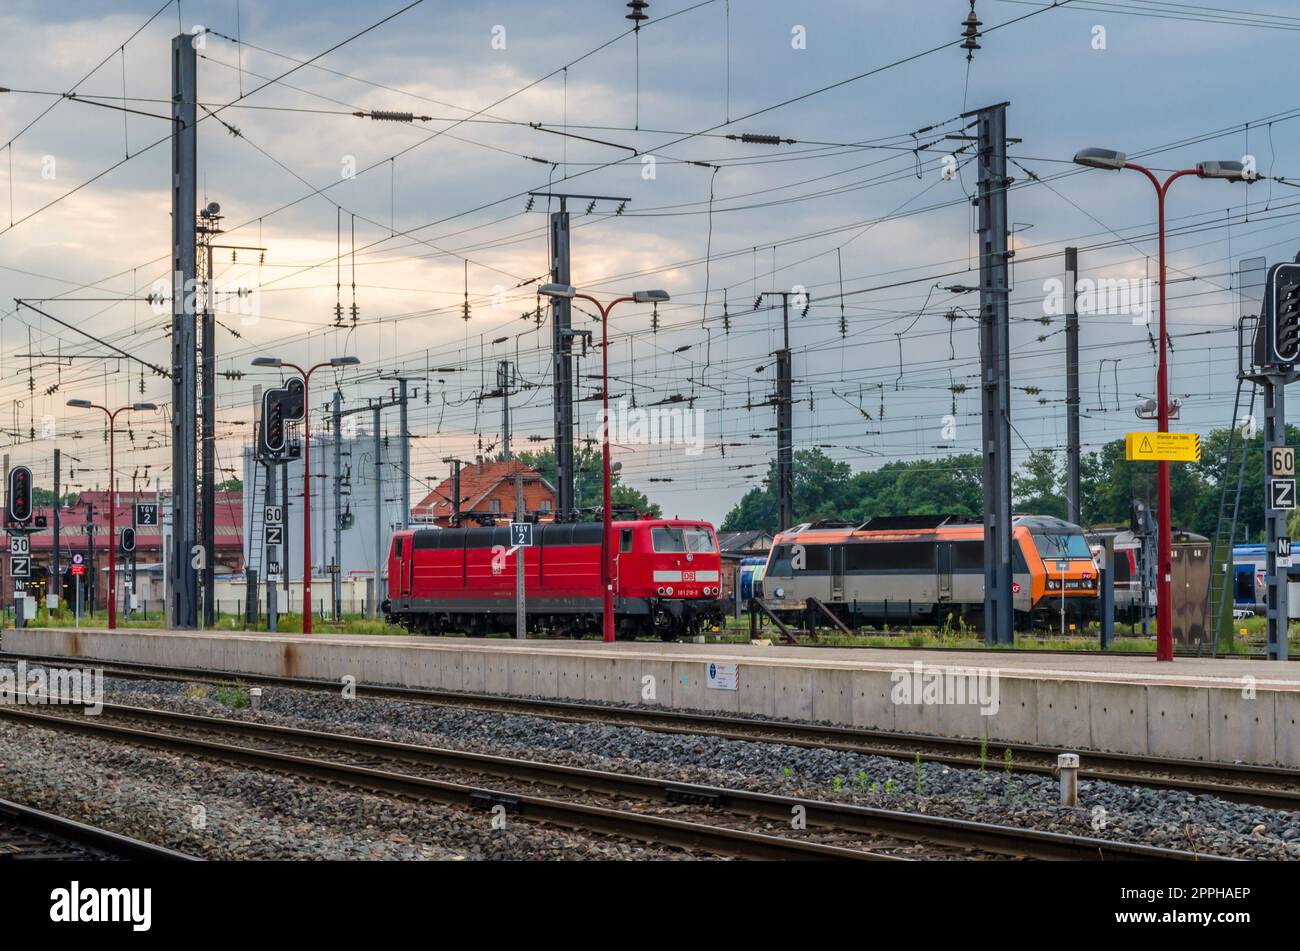 STRASSBURG, FRANKREICH - 29. AUGUST 2013: Blick auf die Bahnsteige am Bahnhof Straßburg, Elsass, Frankreich Stockfoto